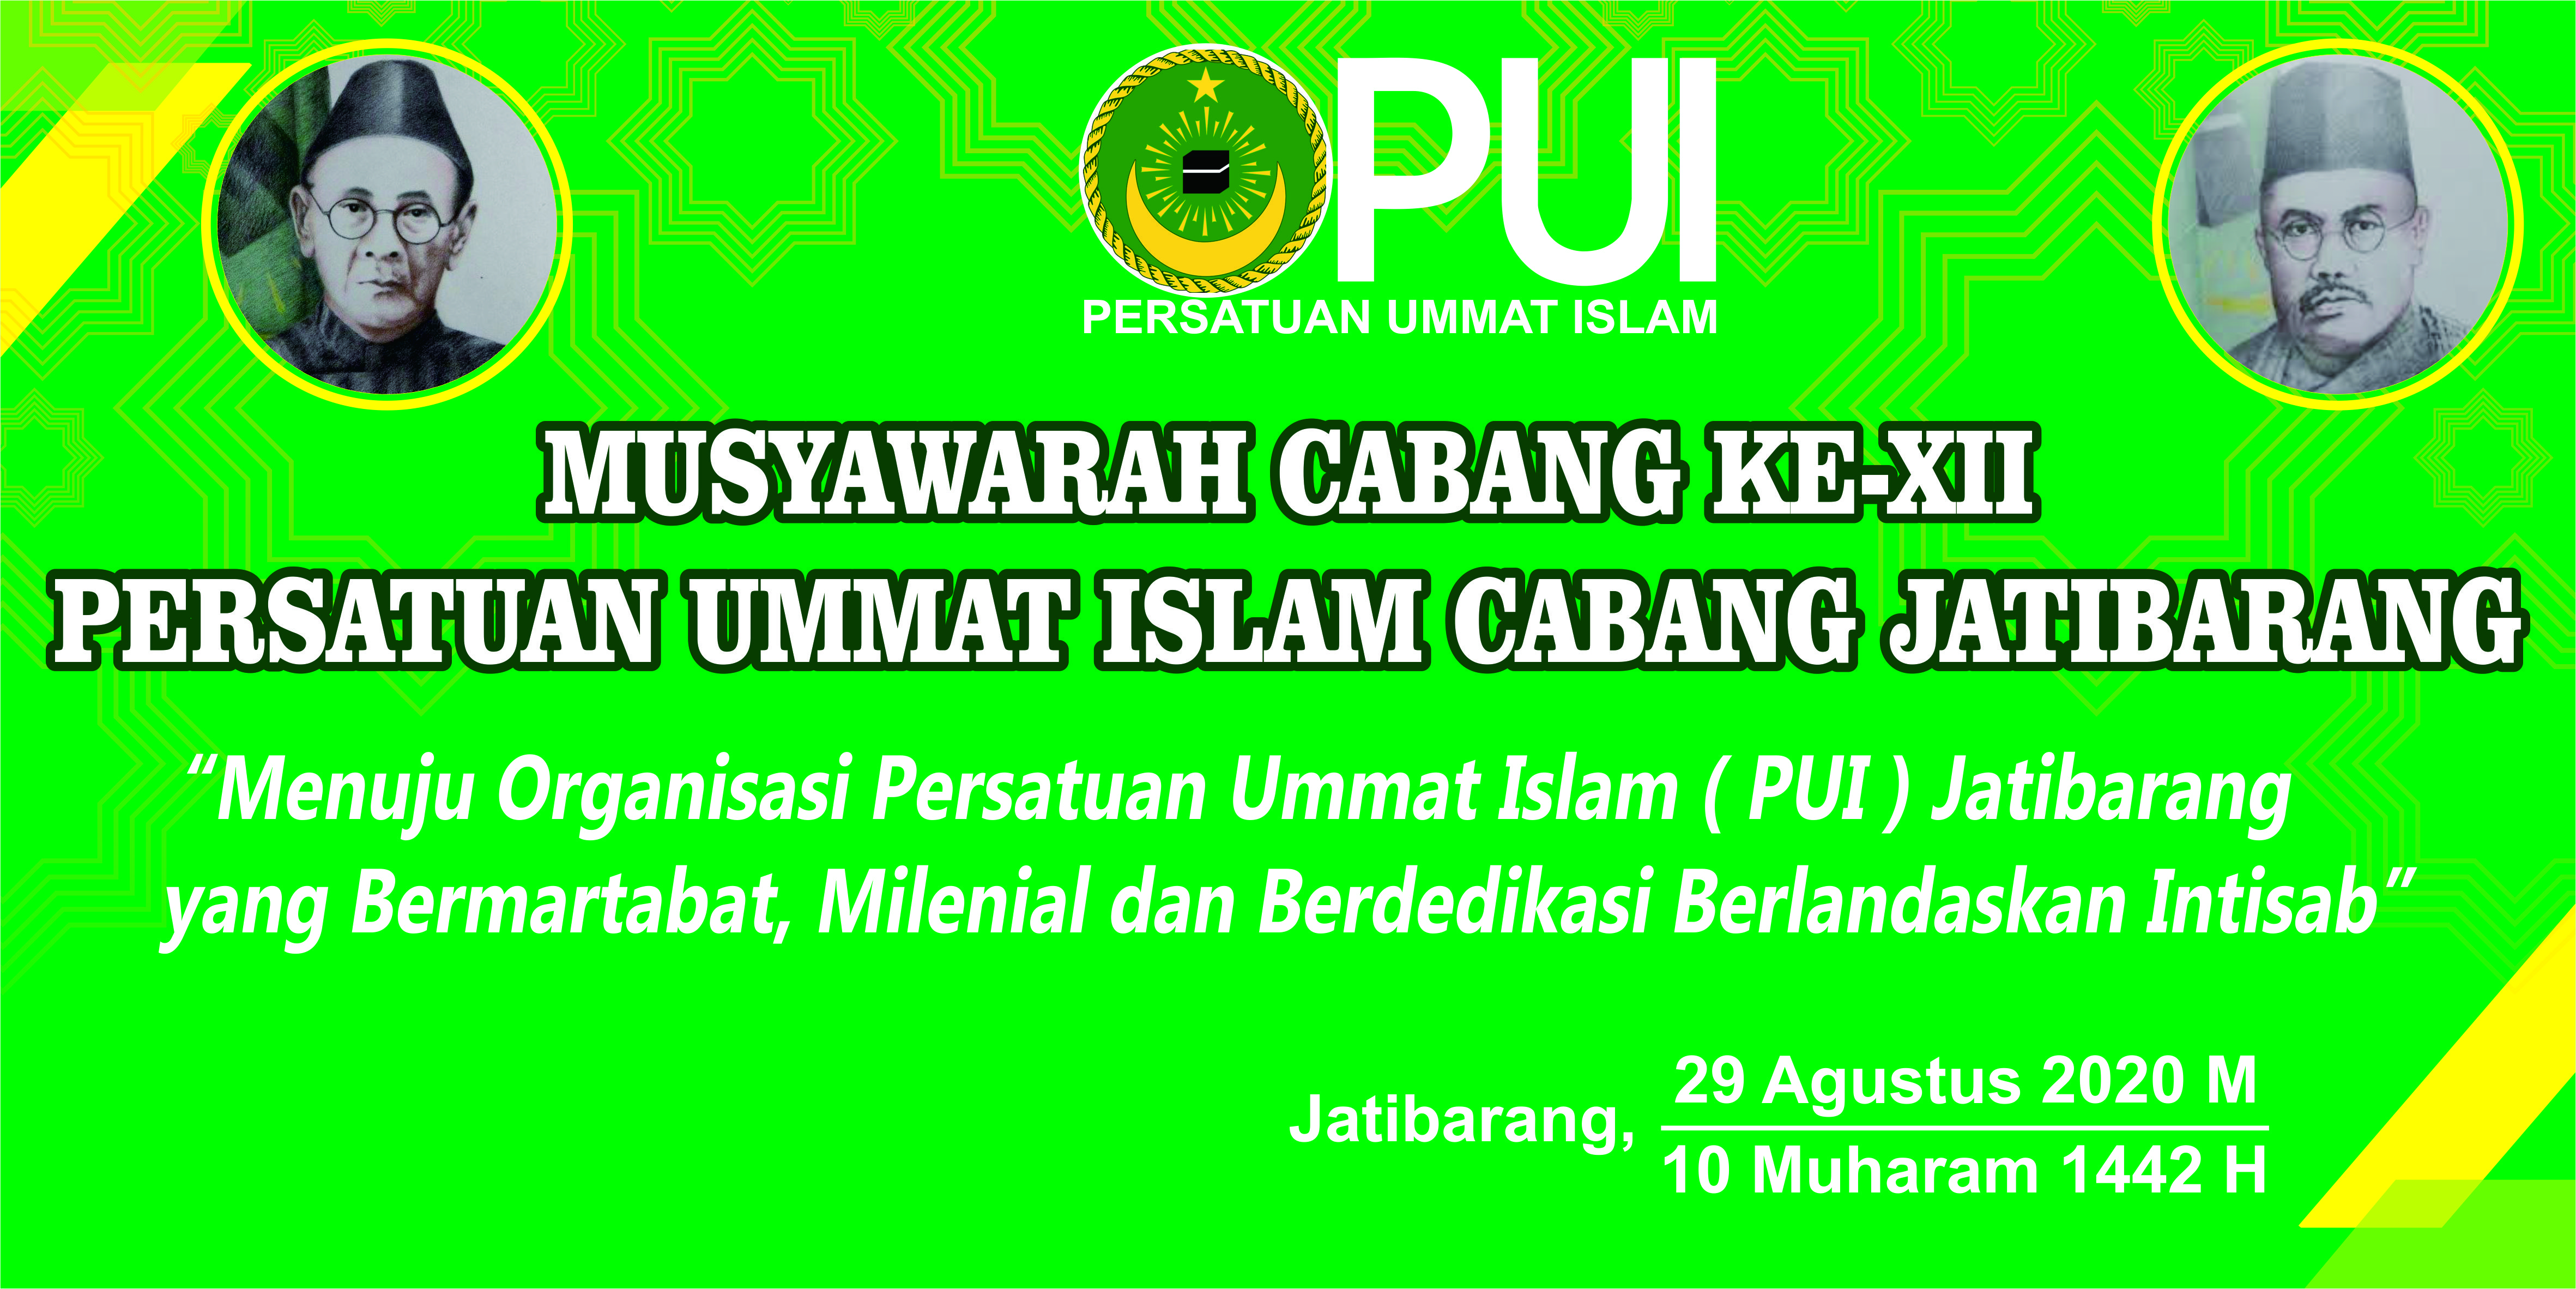 Persatuan Ummat Islam (PUI) Cabang Jatibarang Berencana Gelar Musyawarah Cabang ke-12